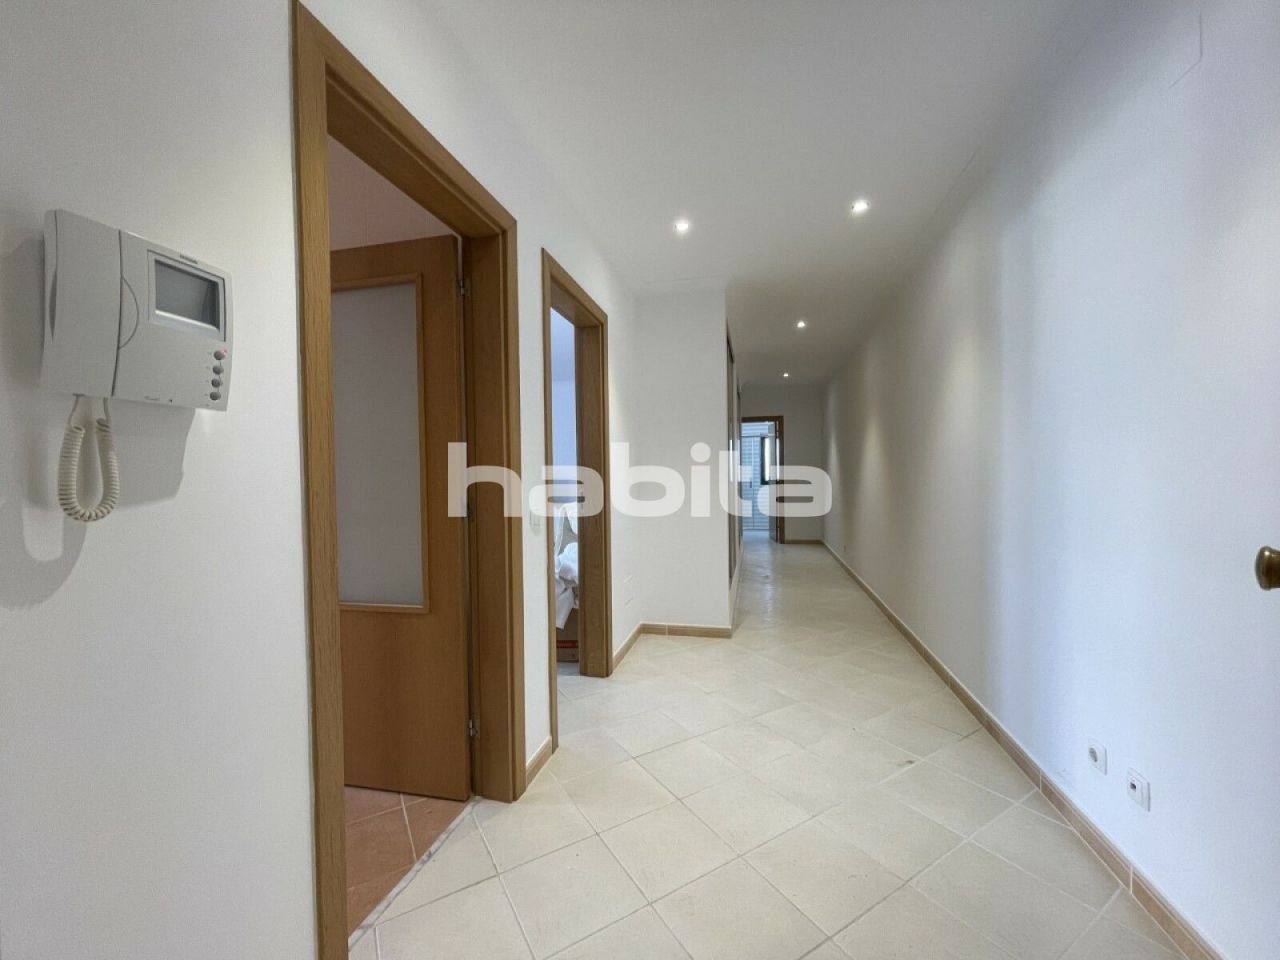 Apartment in Portimao, Portugal, 88.73 sq.m - picture 1